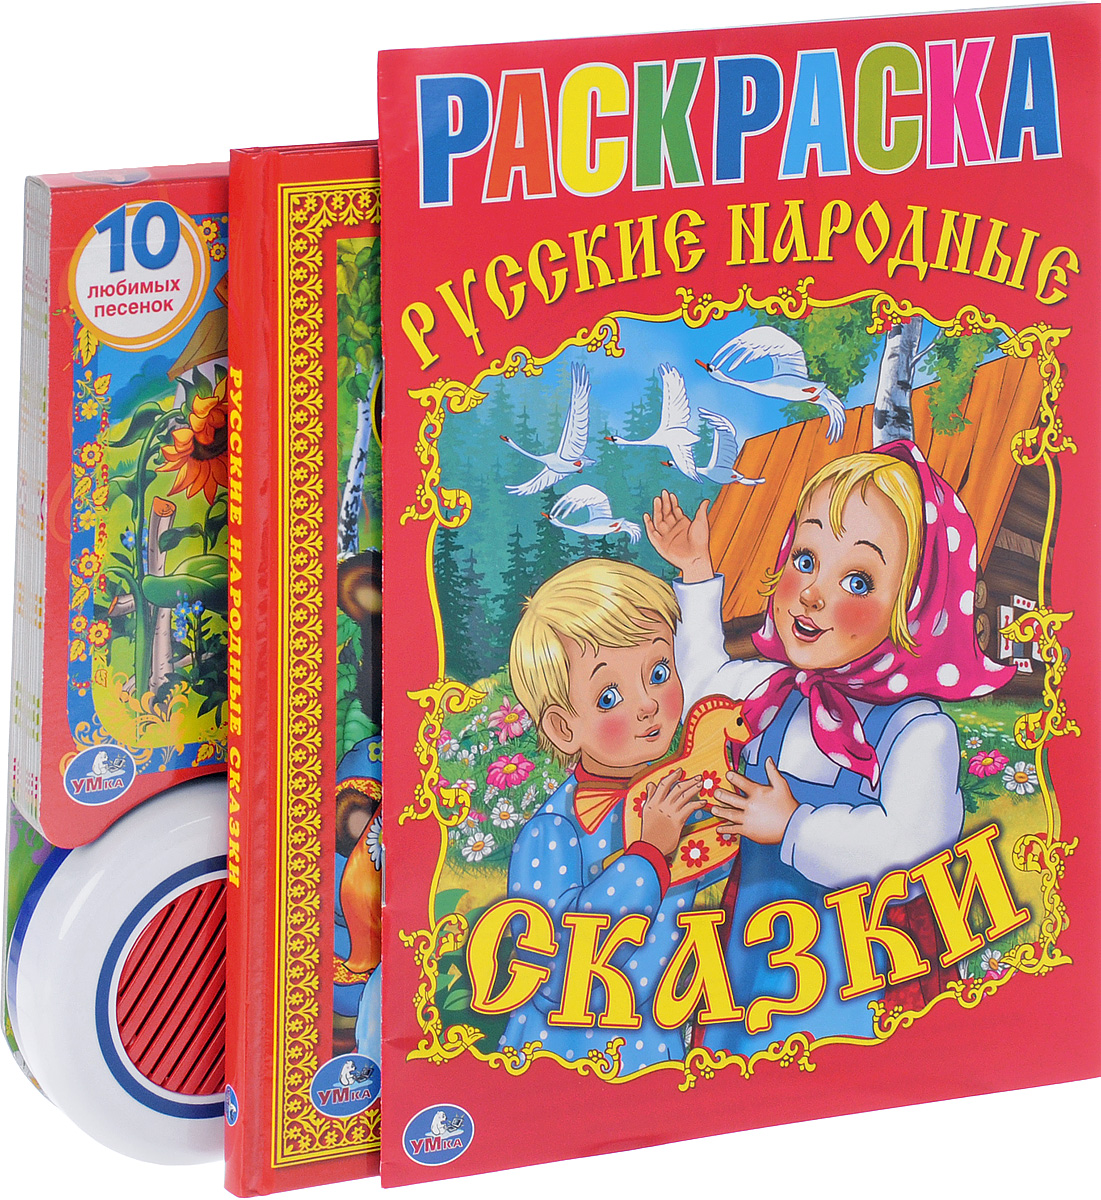 Русские народные сказки и песенки (комплект из 3 книг)